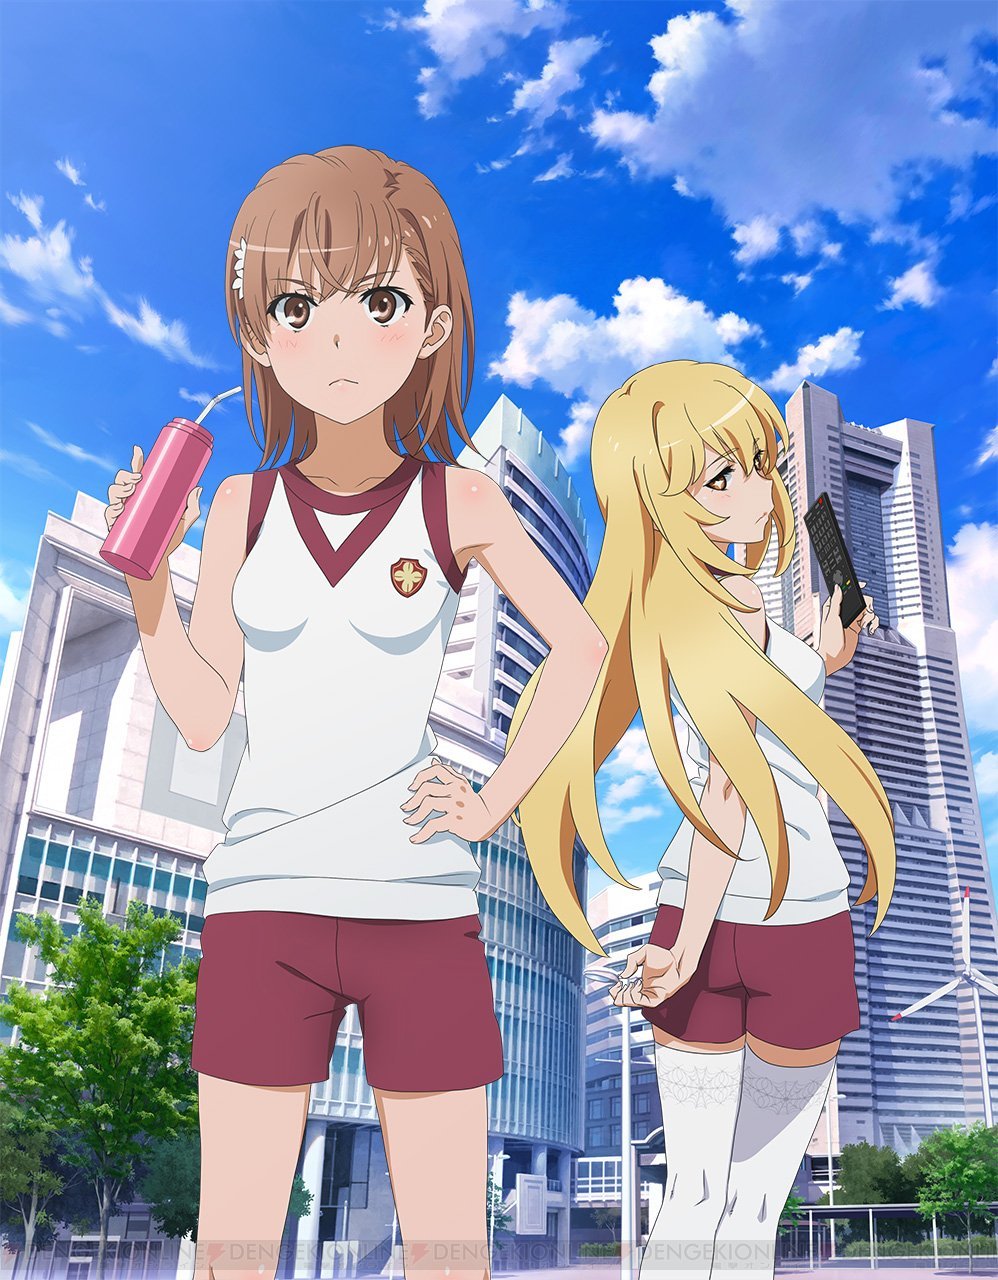 Ã¢ÂÂToaru Kagaku no RailgunÃ¢ÂÂ S3 anime has also been announced. It will be directed by Tatsuyuki Nagai at J.C.STAFF.